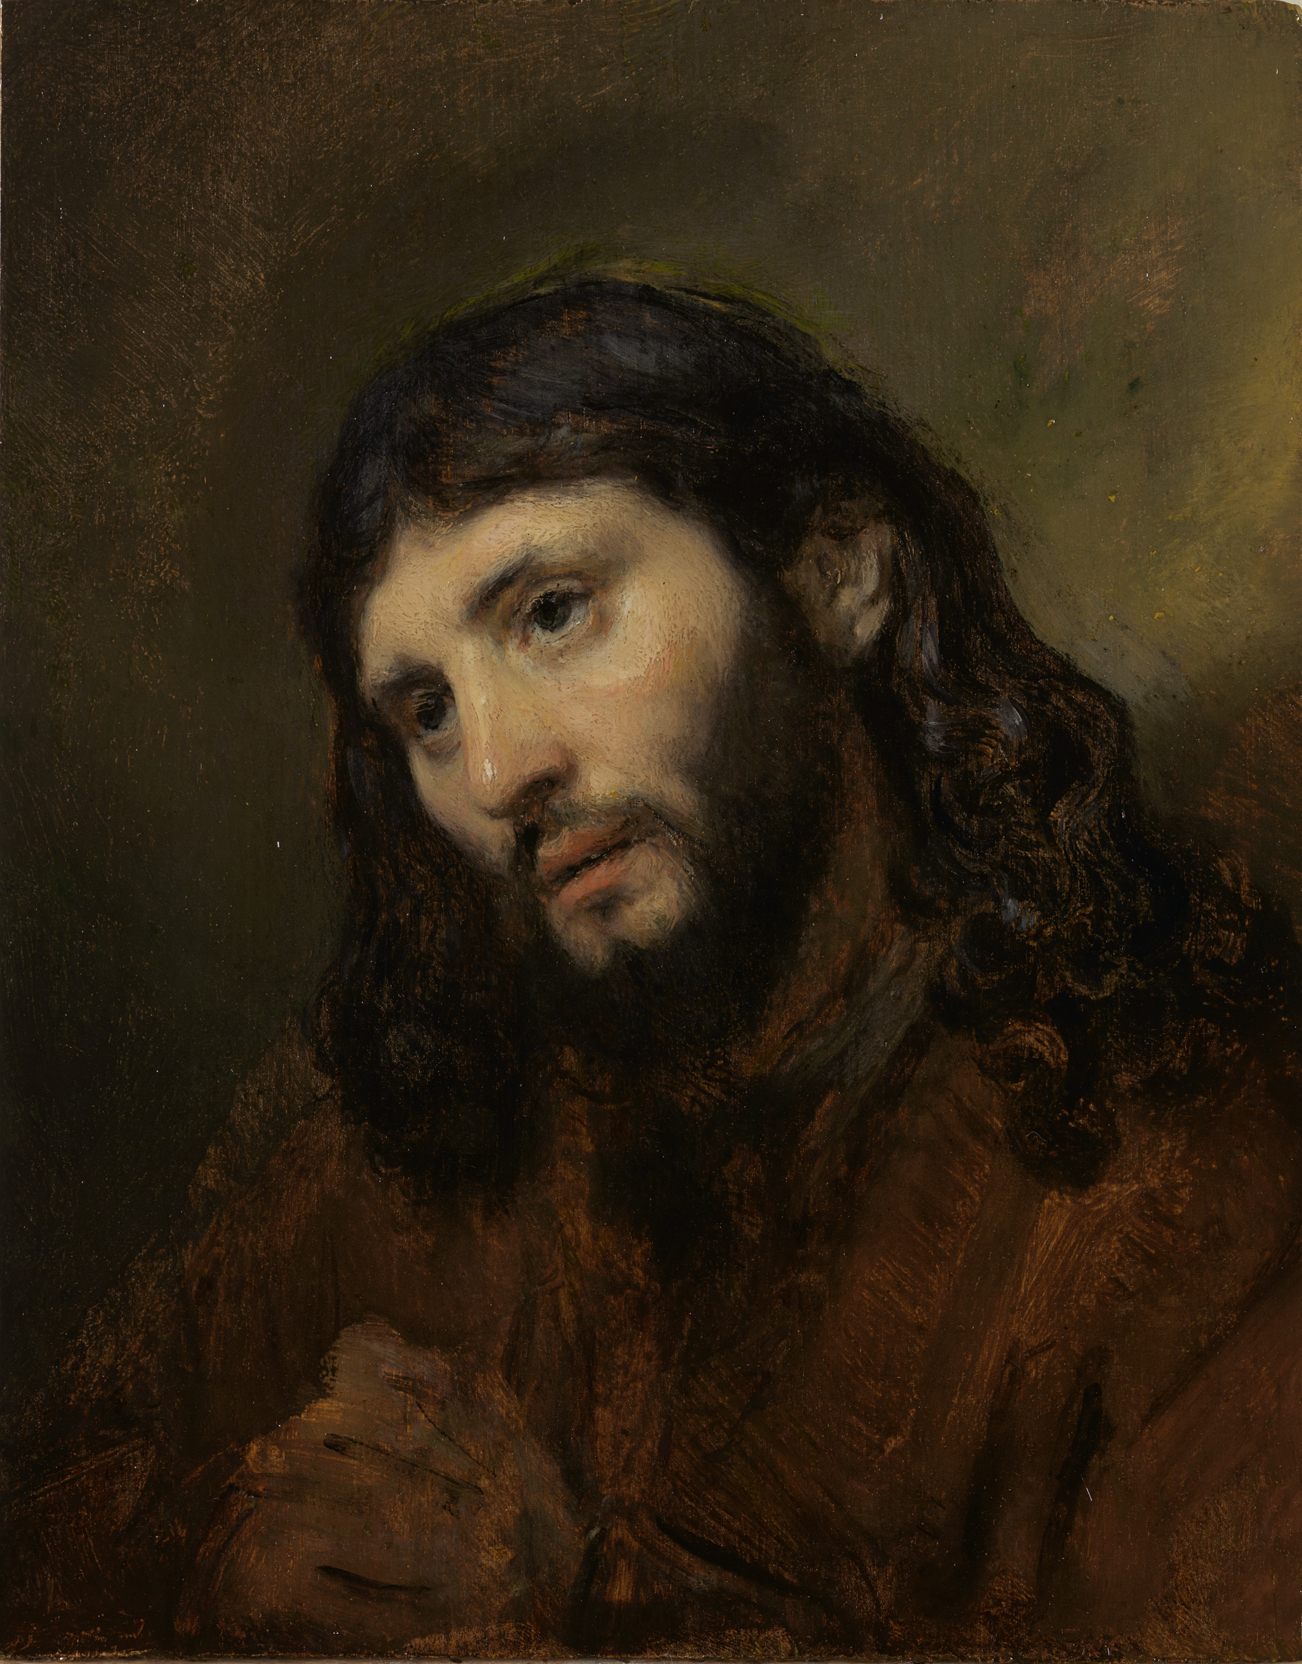 Het Hoofd van Christus by Rembrandt Van Rijn - 1648 - 25,5 x 20,1 cm Rembrandthuis